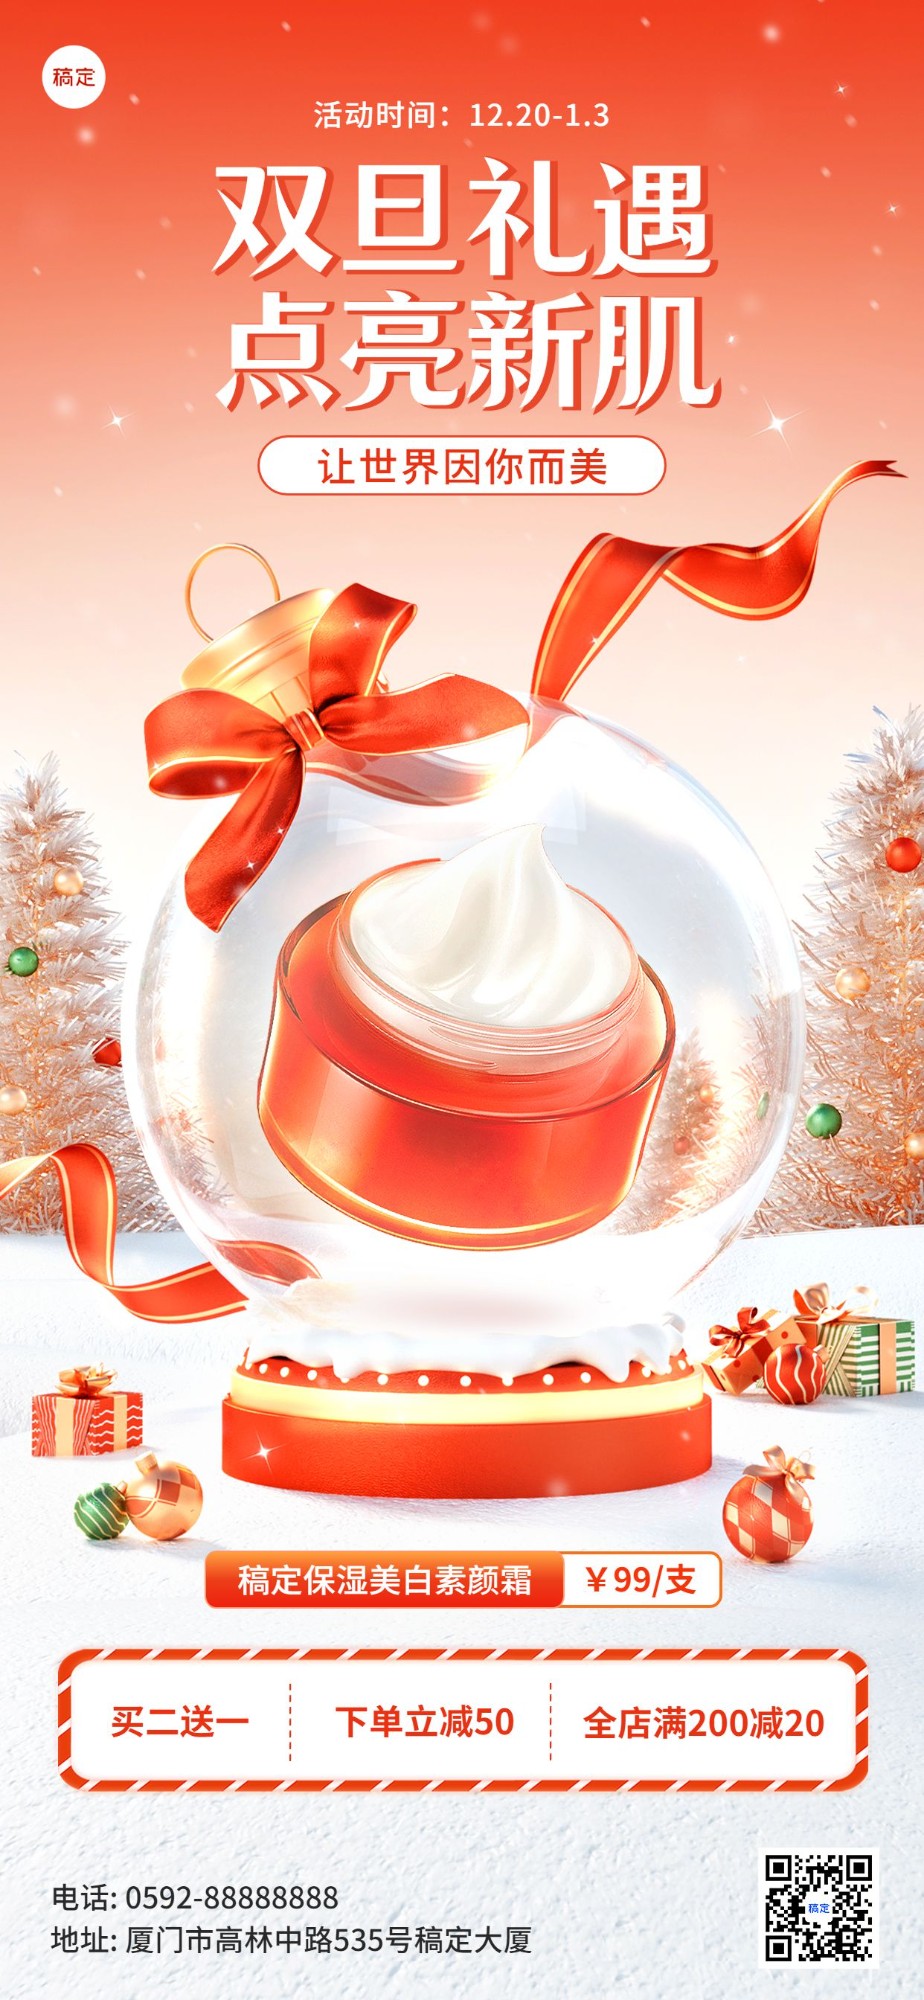 圣诞节美容美妆产品展示3d水晶球轻奢感全屏竖版海报预览效果